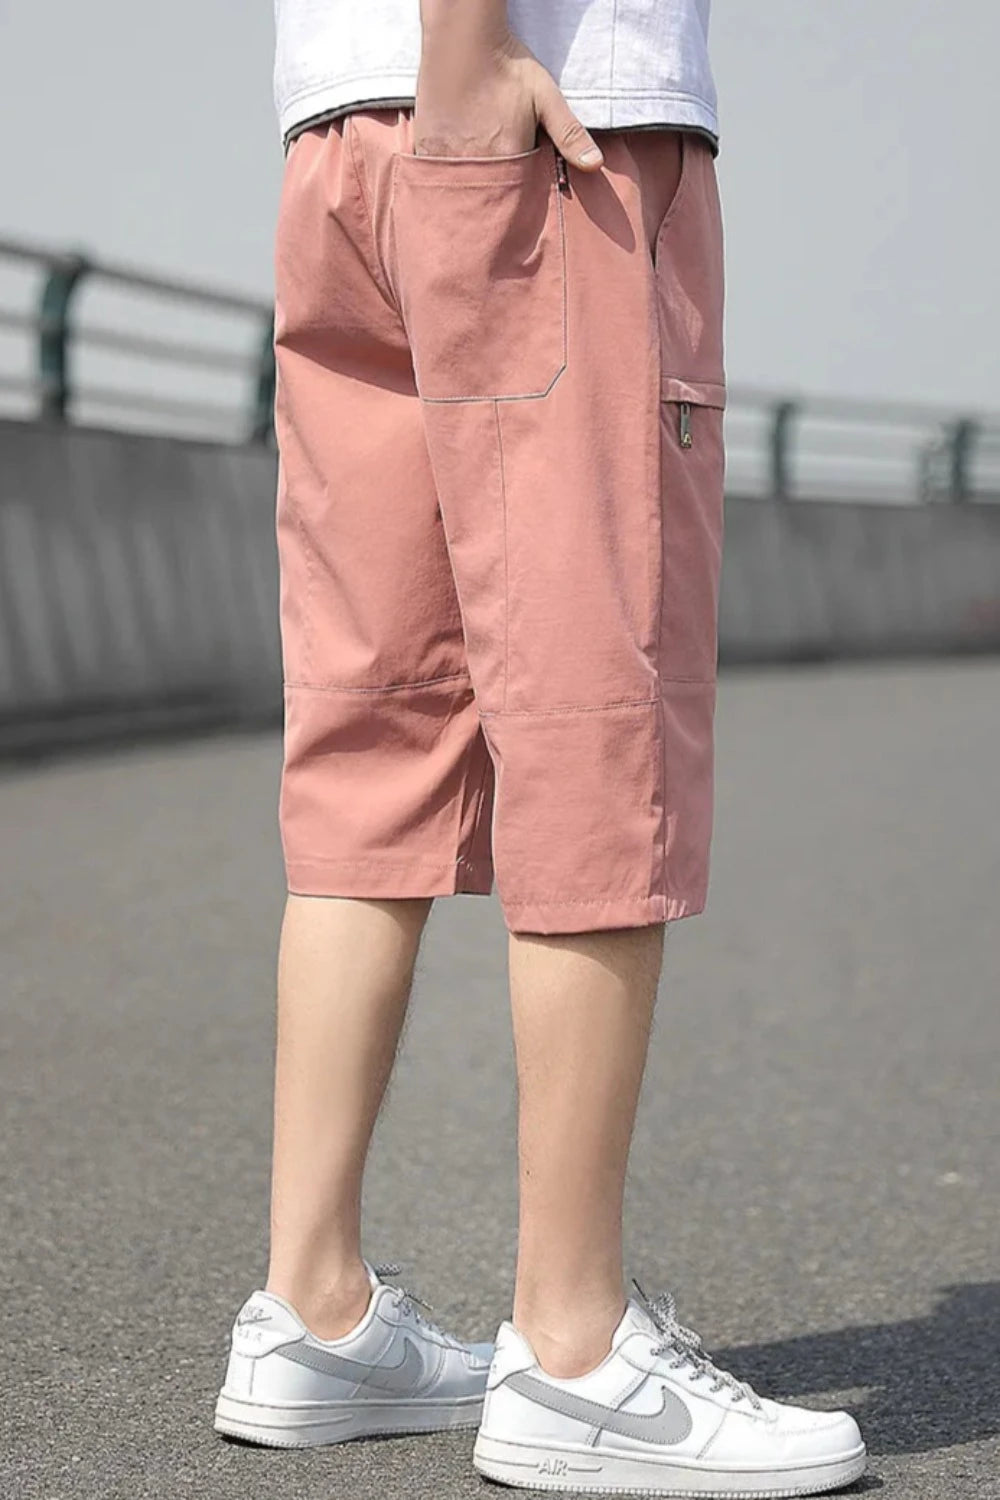 Plus Size Summer Calf-Length Men's Shorts Men's Pants JT's Designer Fashion